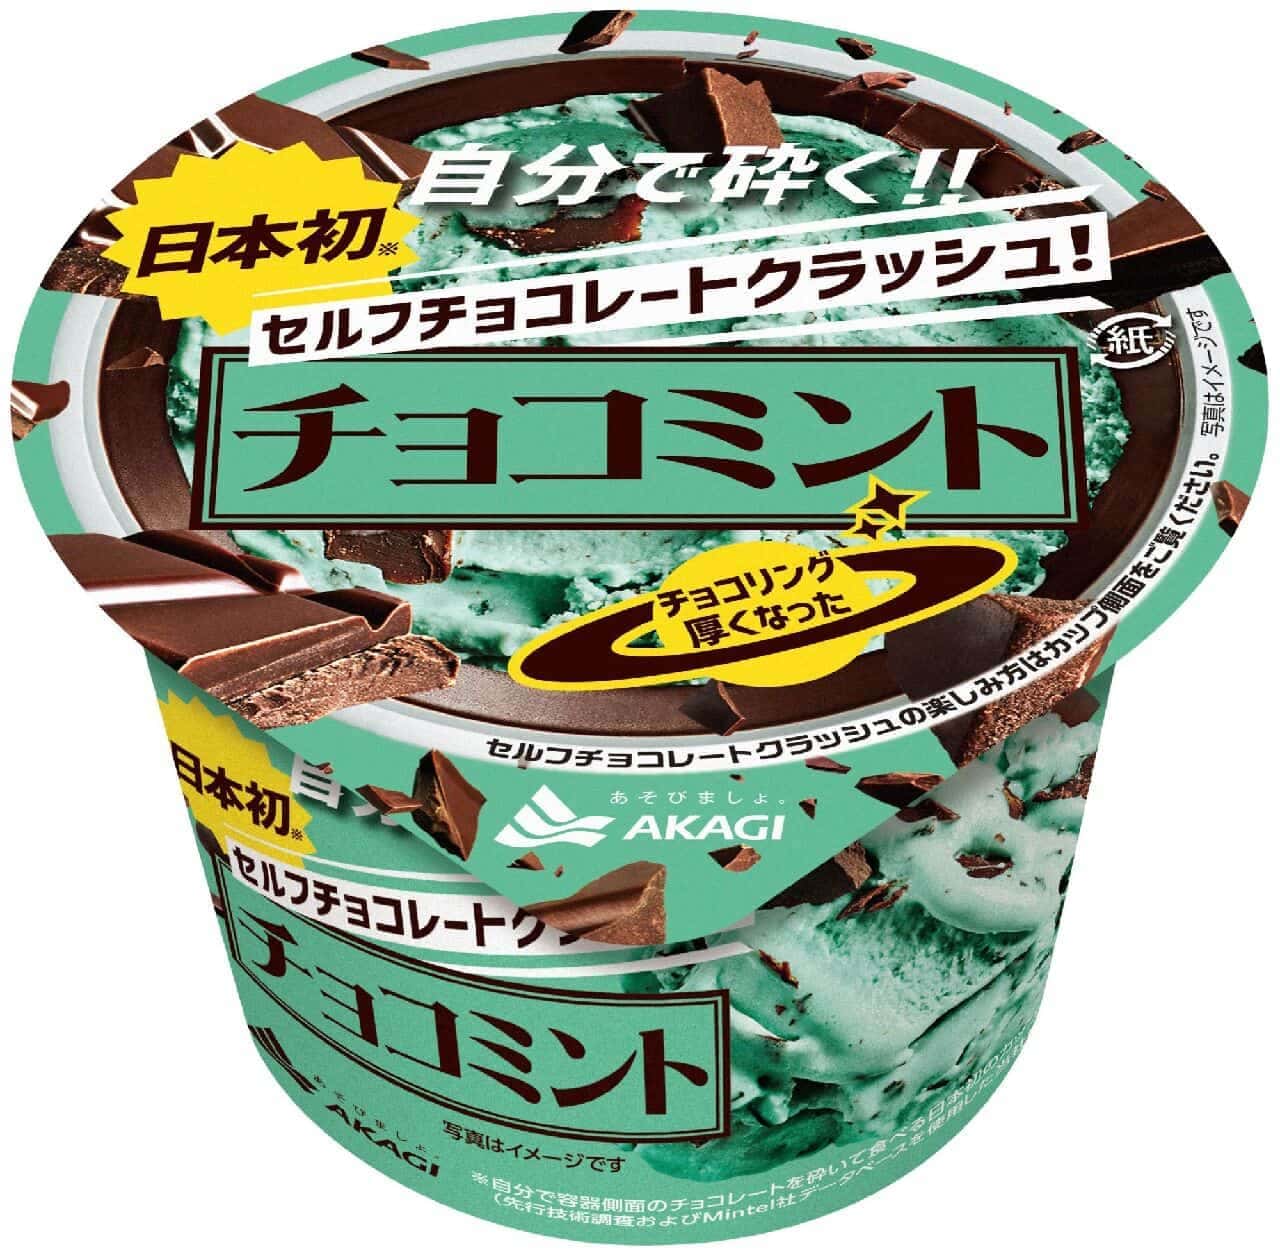 Akagi Nyugyo "Self Chocolate Crush! Choco Mint".